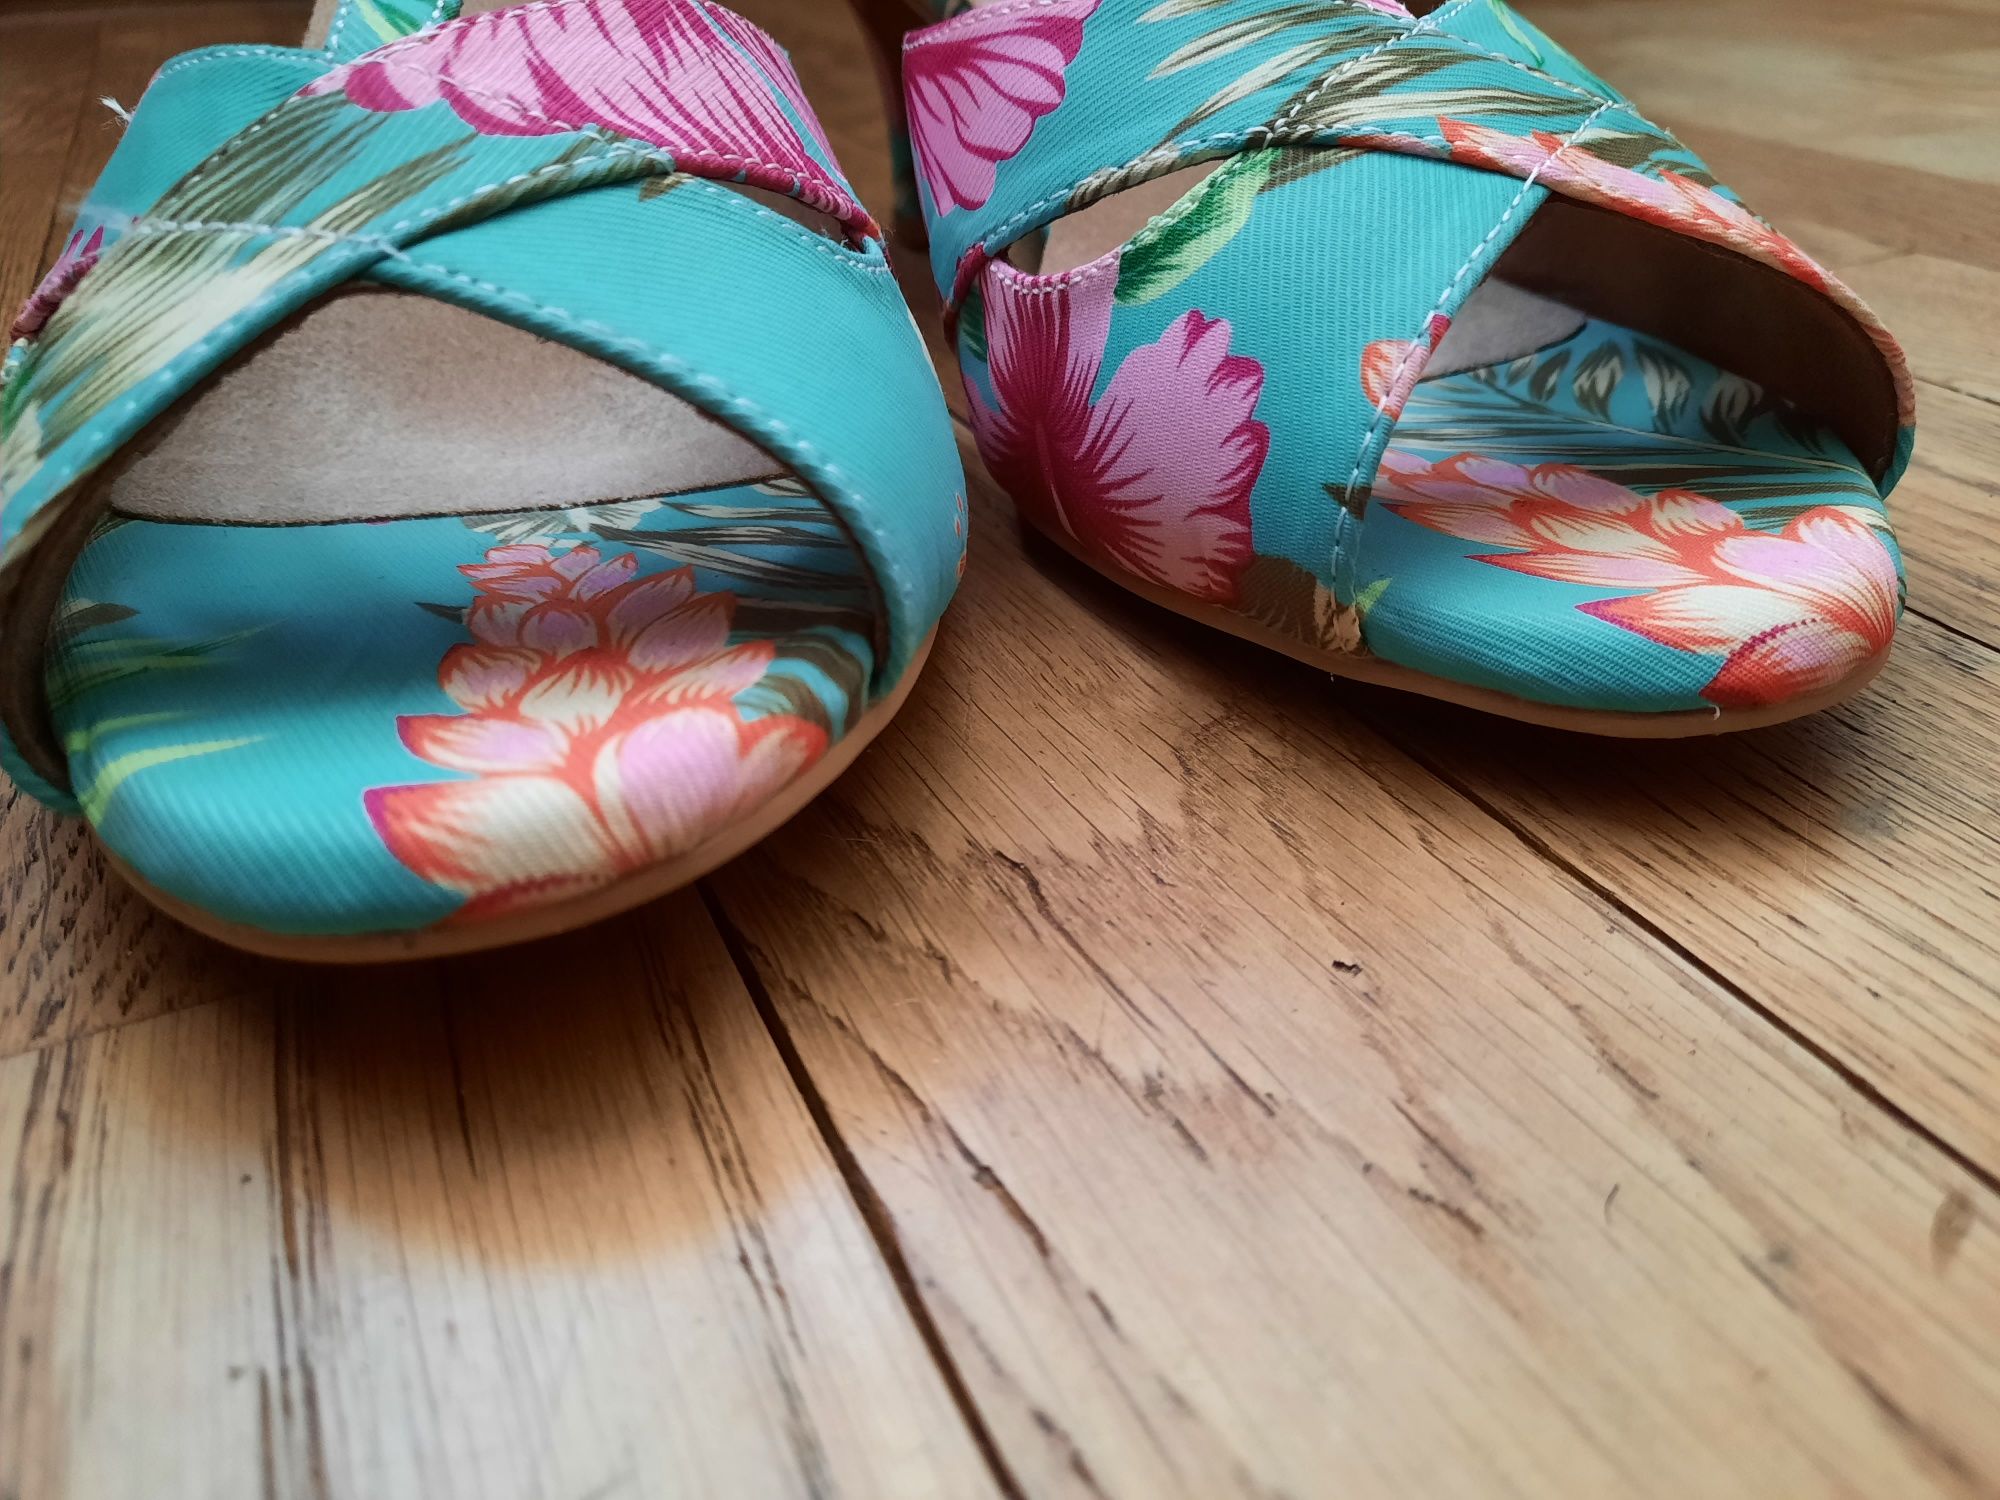 Buty damskie na szpilce 6cm kolor miętowy w kwiaty